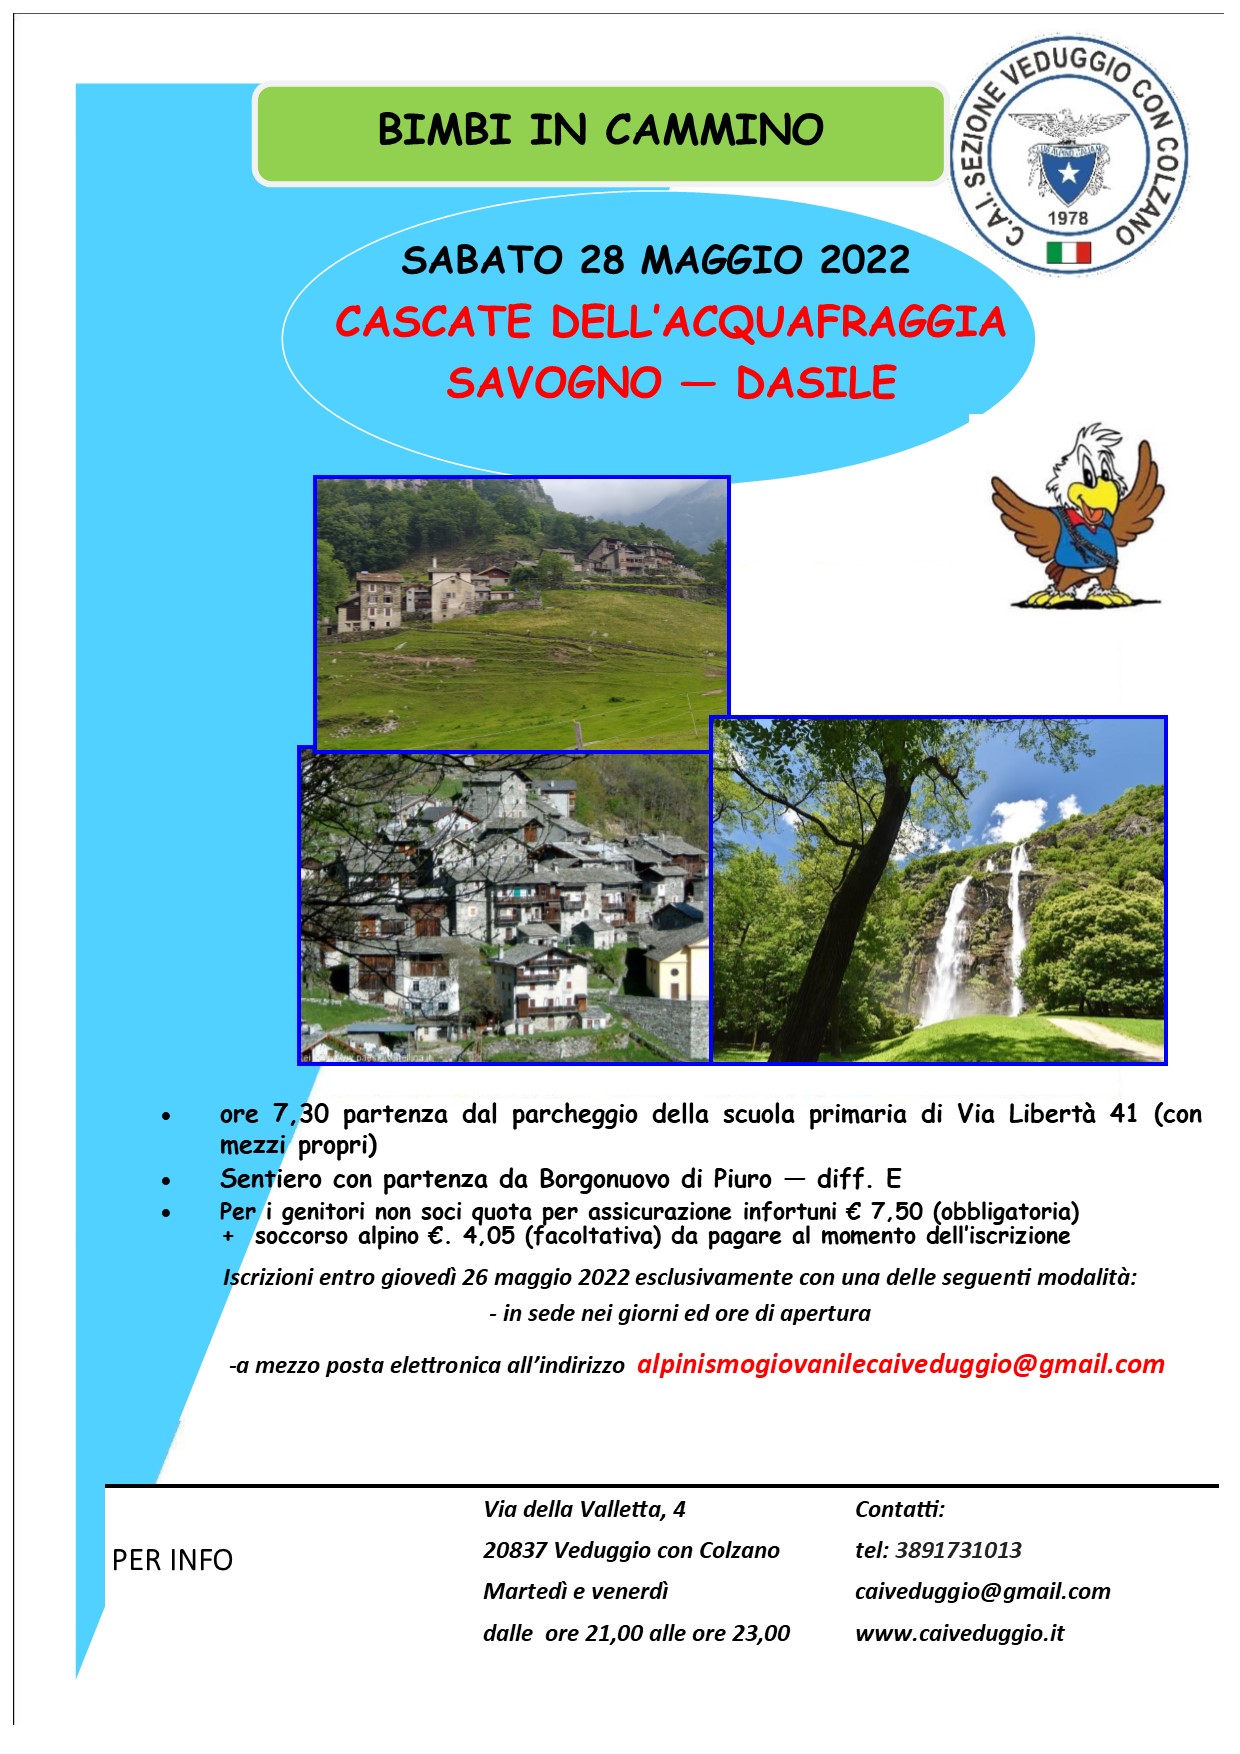 28 maggio 2022 – Cascate Acquafraggia – Savogno/Dasile – (Bimbi in cammino)